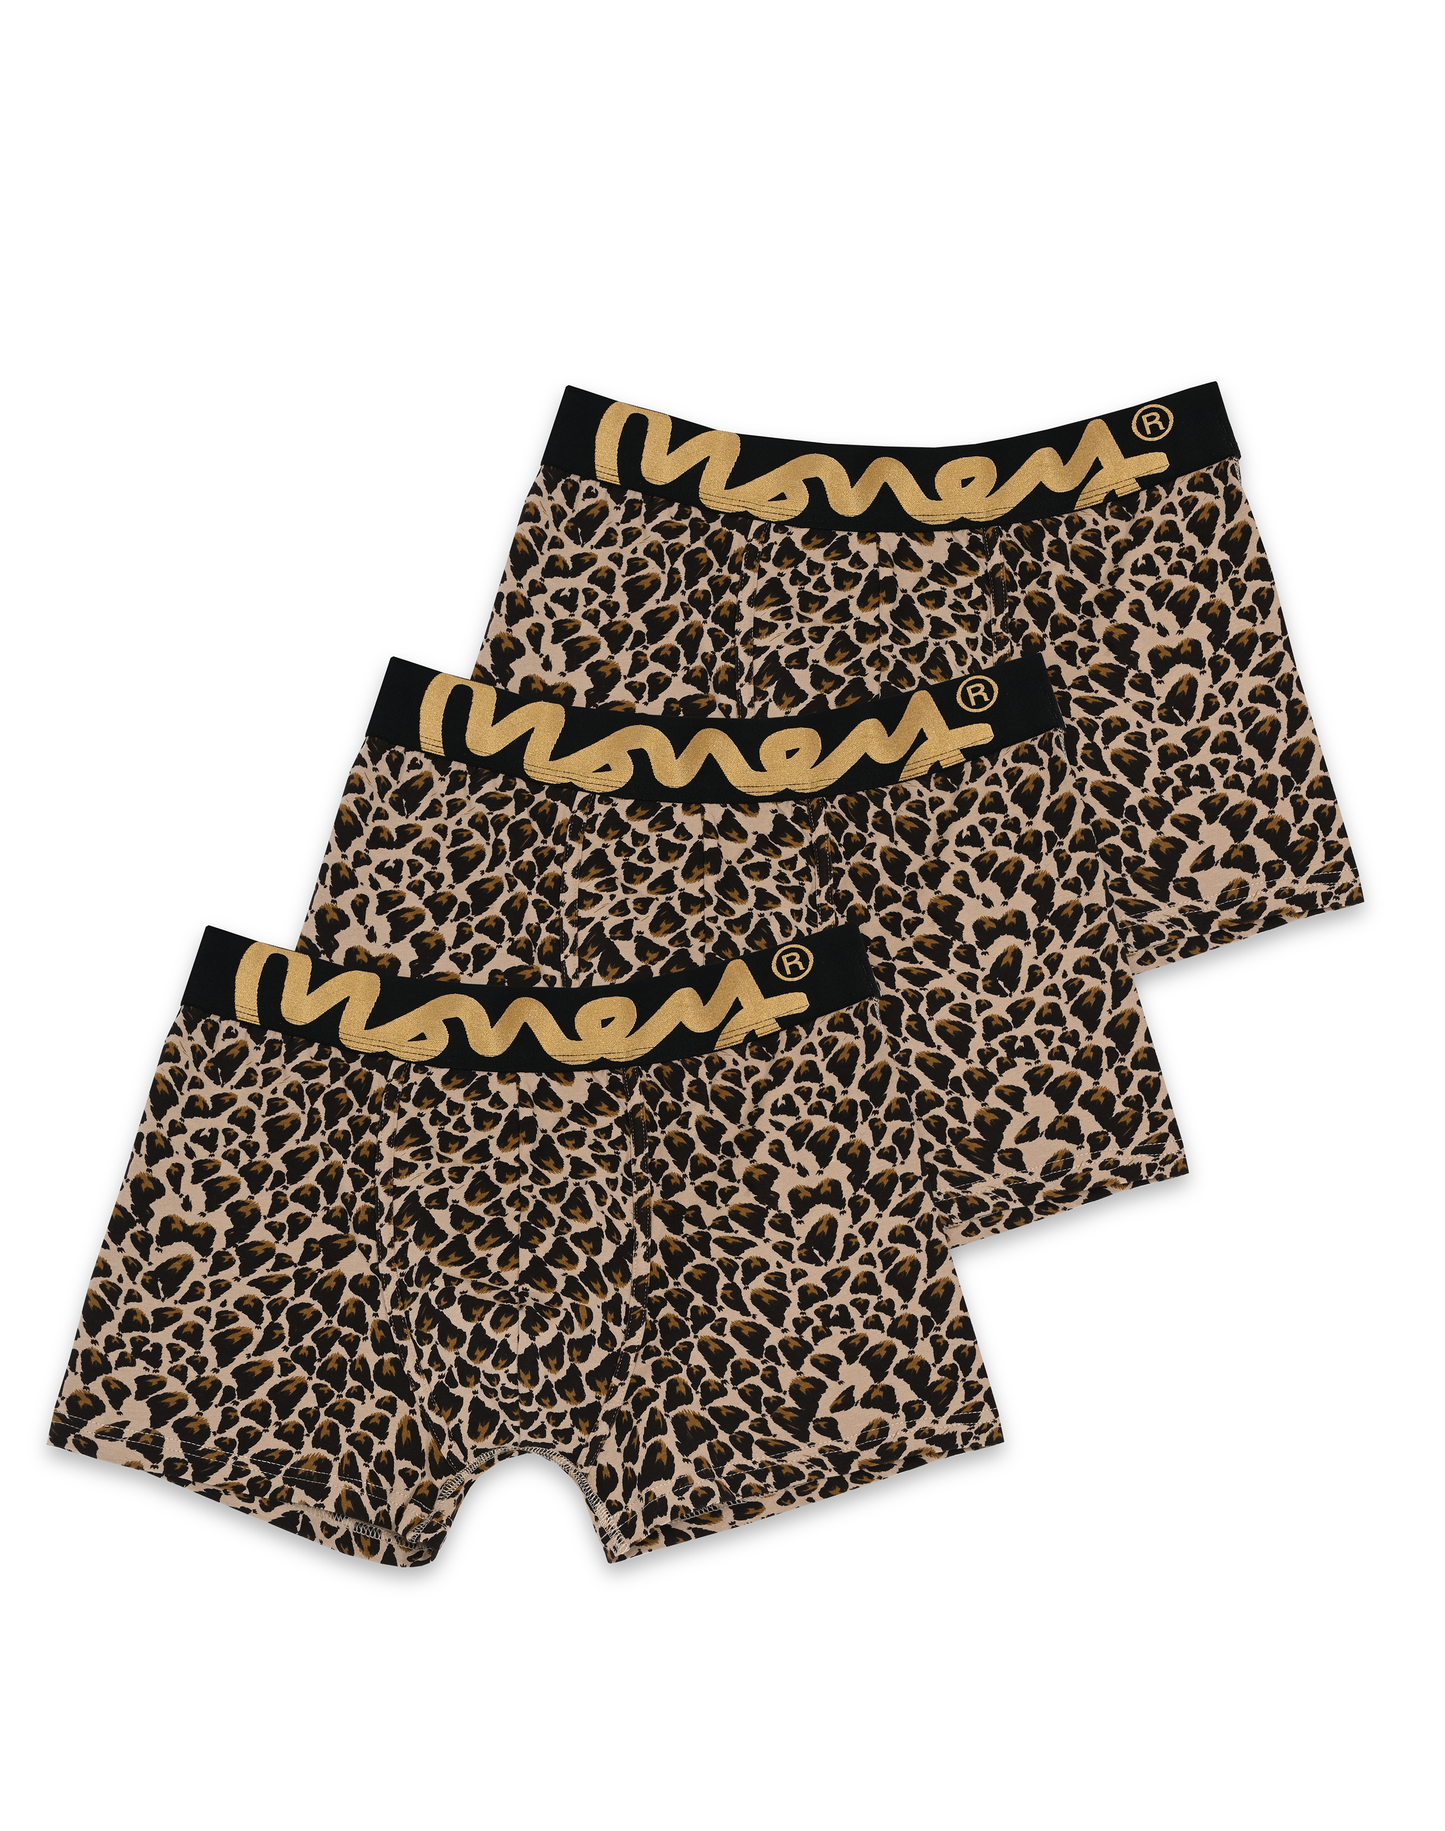 Cheetah Camo Chop Trunks (3 Pack)